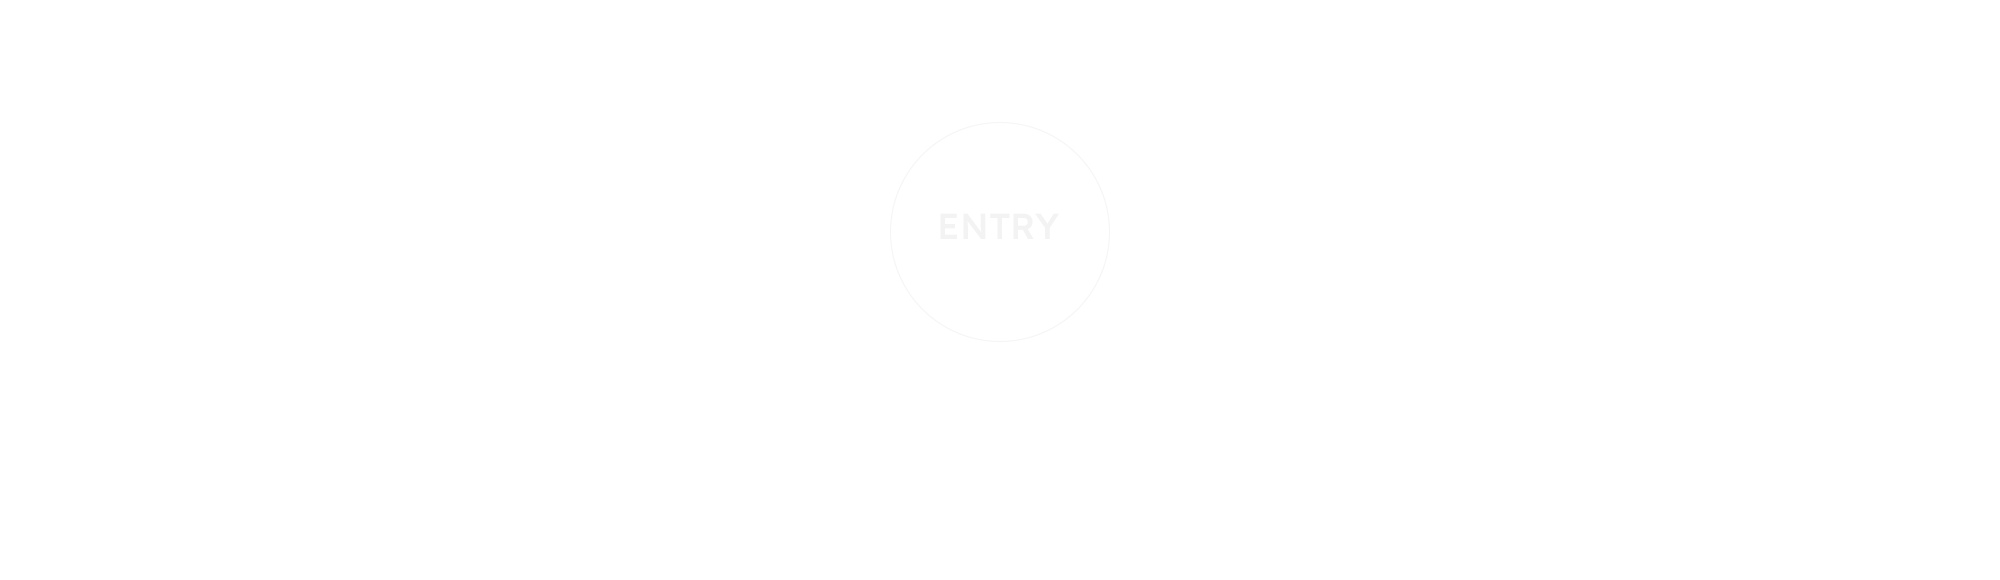 banner_entry